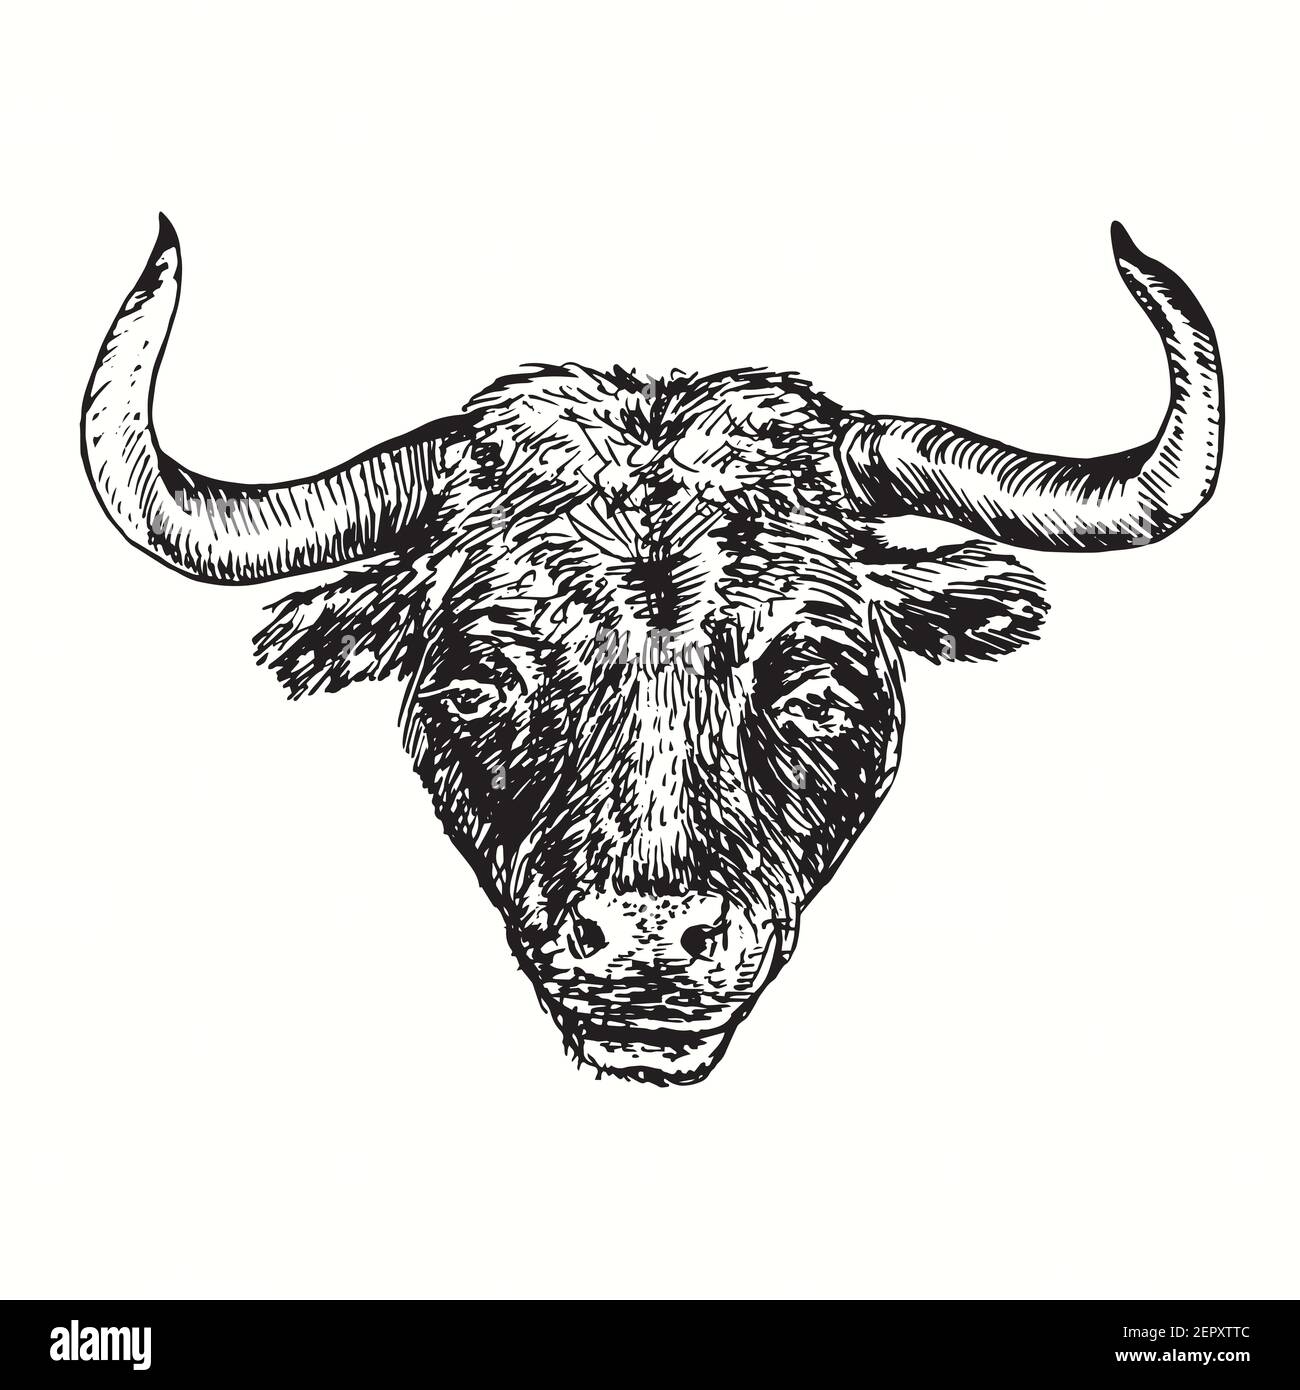 Portrait de taureau noir dessiné à la main.Dessin noir et blanc. Banque D'Images